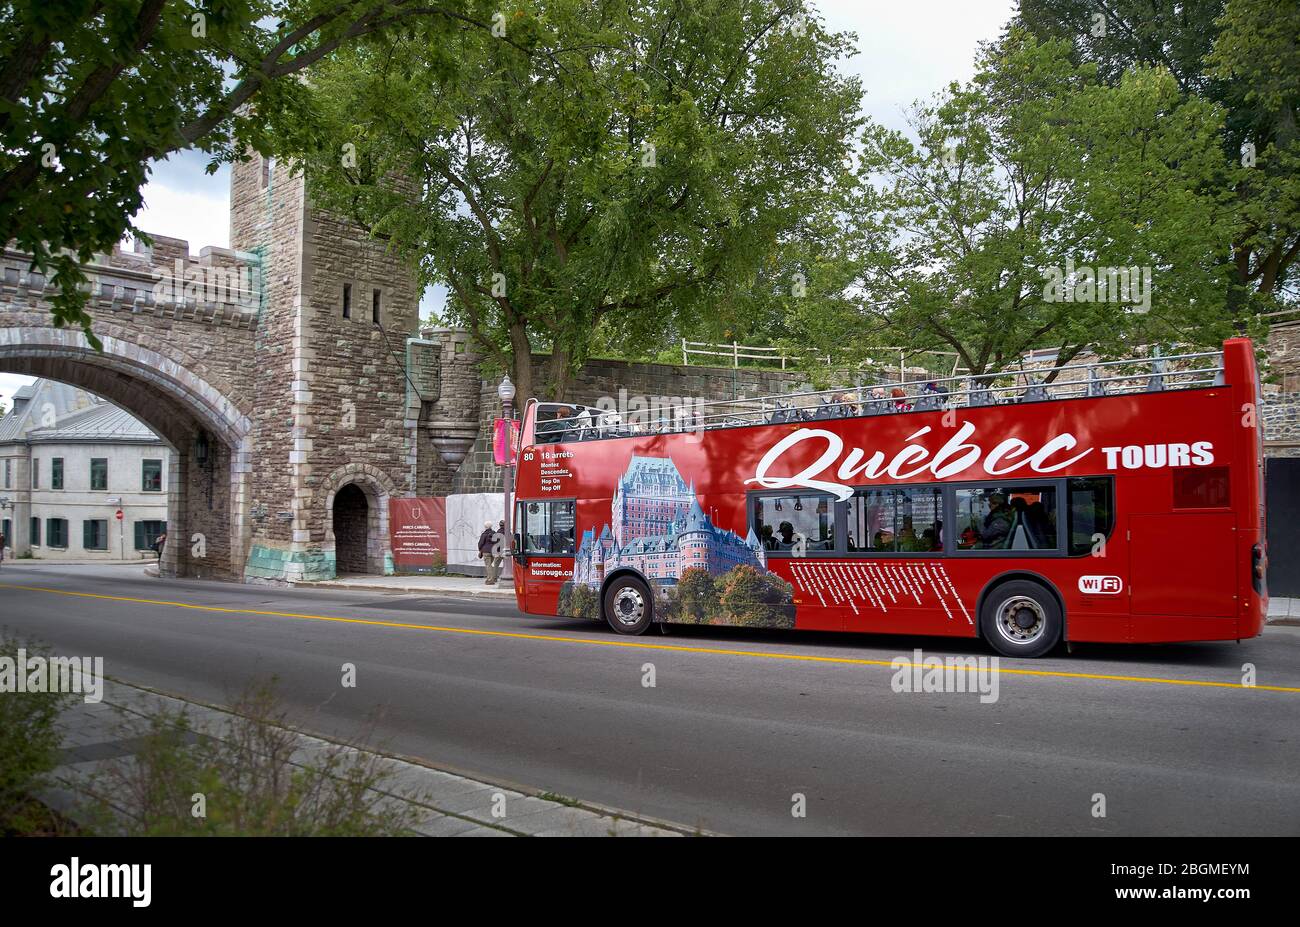 Québec, Canada 23 septembre 2018 : bus à double pont rouge touristique à la porte Saint Louis, une des attractions touristiques célèbres du monde de l'UNESCO Banque D'Images